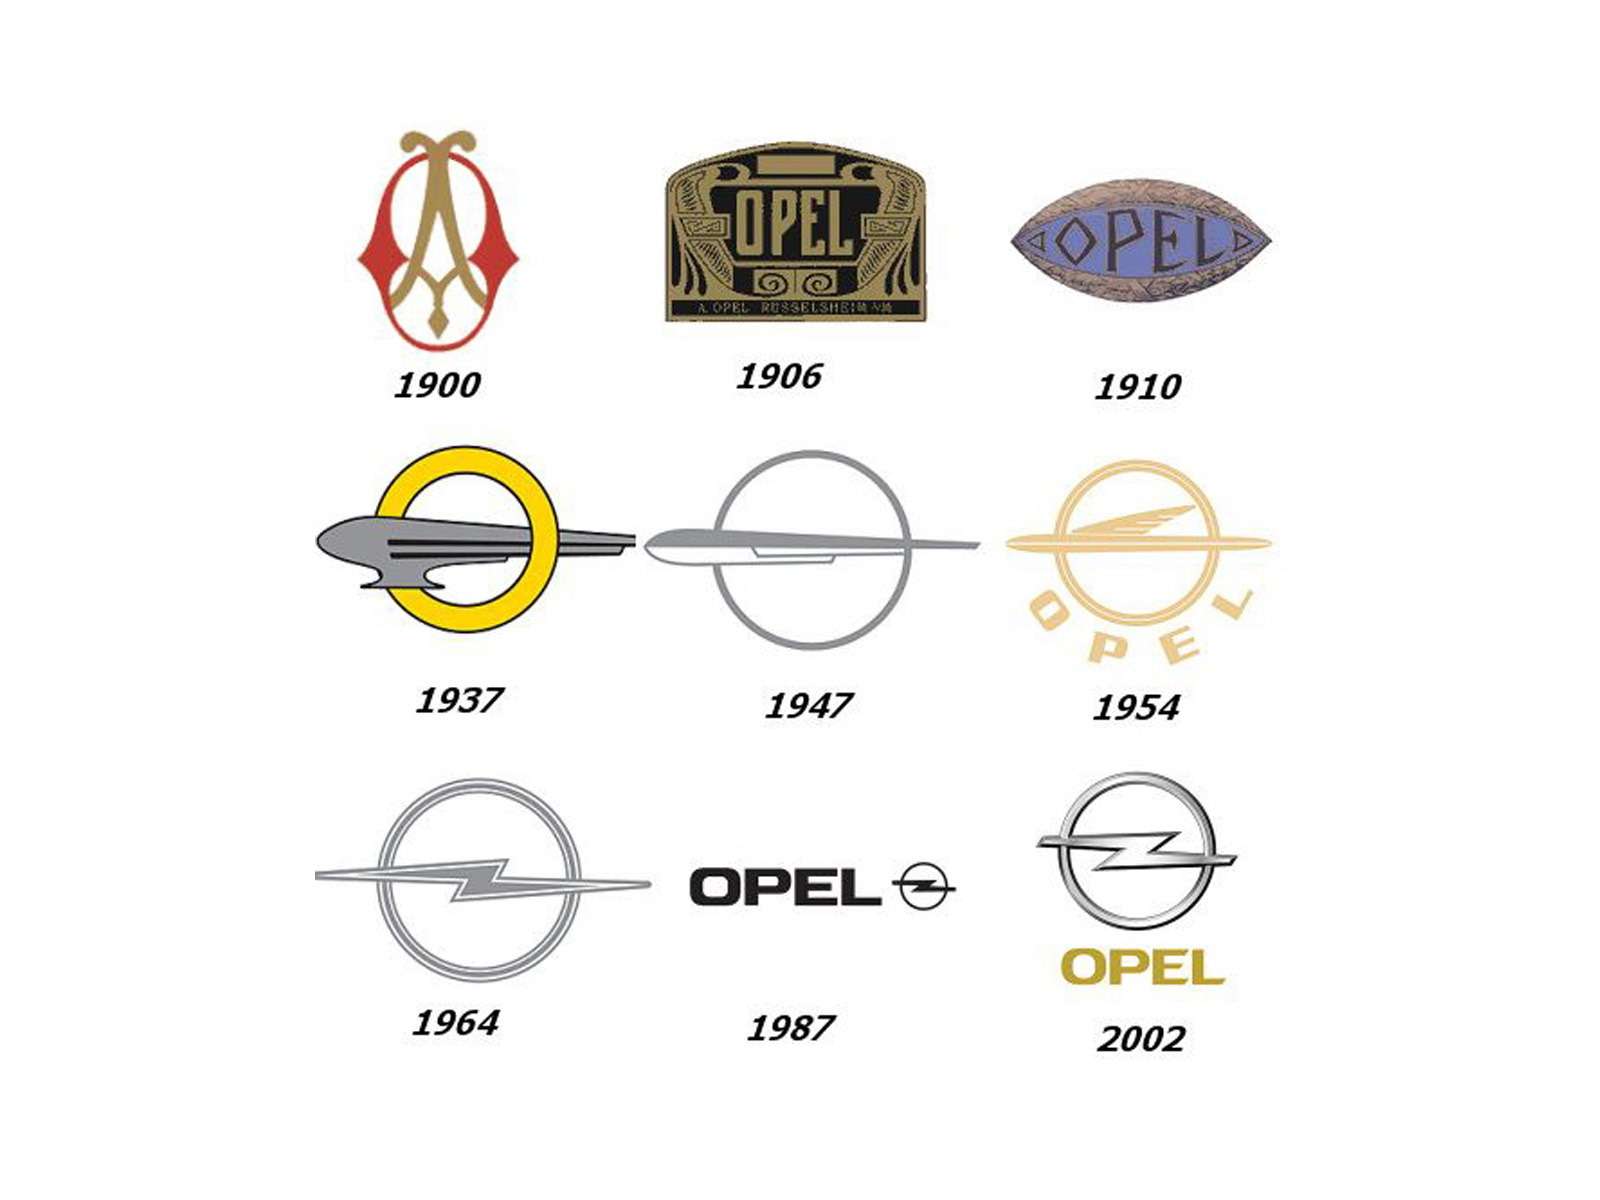 OPEL. Логотип компании из Рюссельсхайма на протяжении ее истории менялся больше десяти раз. До 1937 года эмблема имела форму глаза. В 1937-м логотип был полностью перекроен – ключевое место занял схематичный дирижабль, пролетающий через букву «О». При этом фирма Opel не занималась дирижаблями, просто цеппелины в то время были синонимом прогресса. В 1964 году на логотипе компании впервые появилось изображение молнии. С тех пор изменения носили косметический характер.